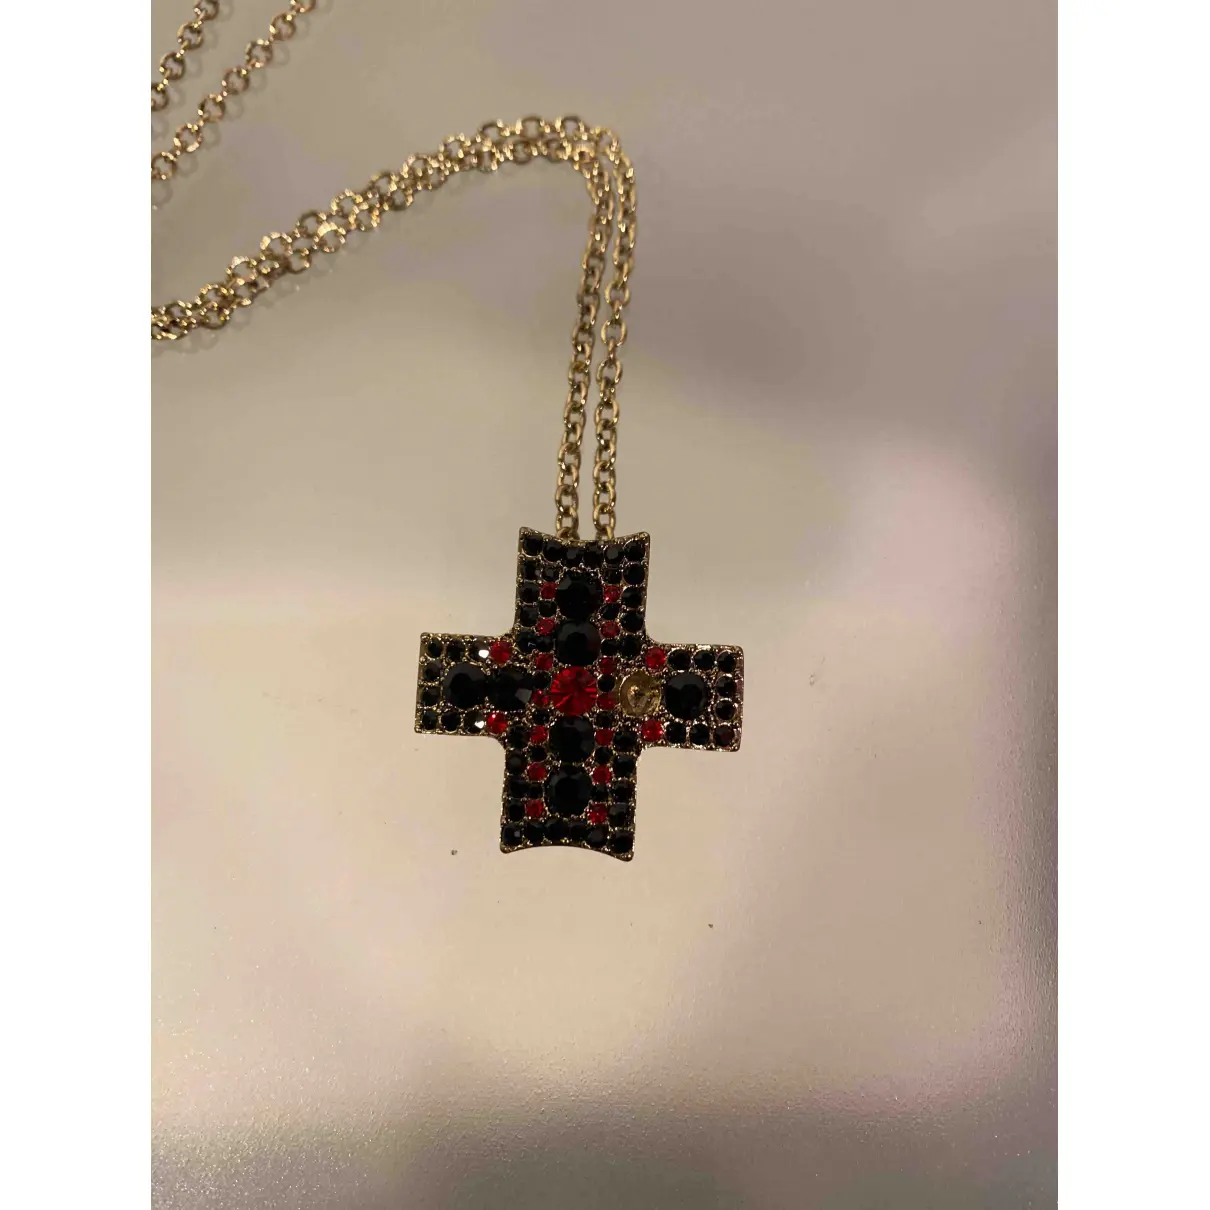 Buy Christian Lacroix Necklace online